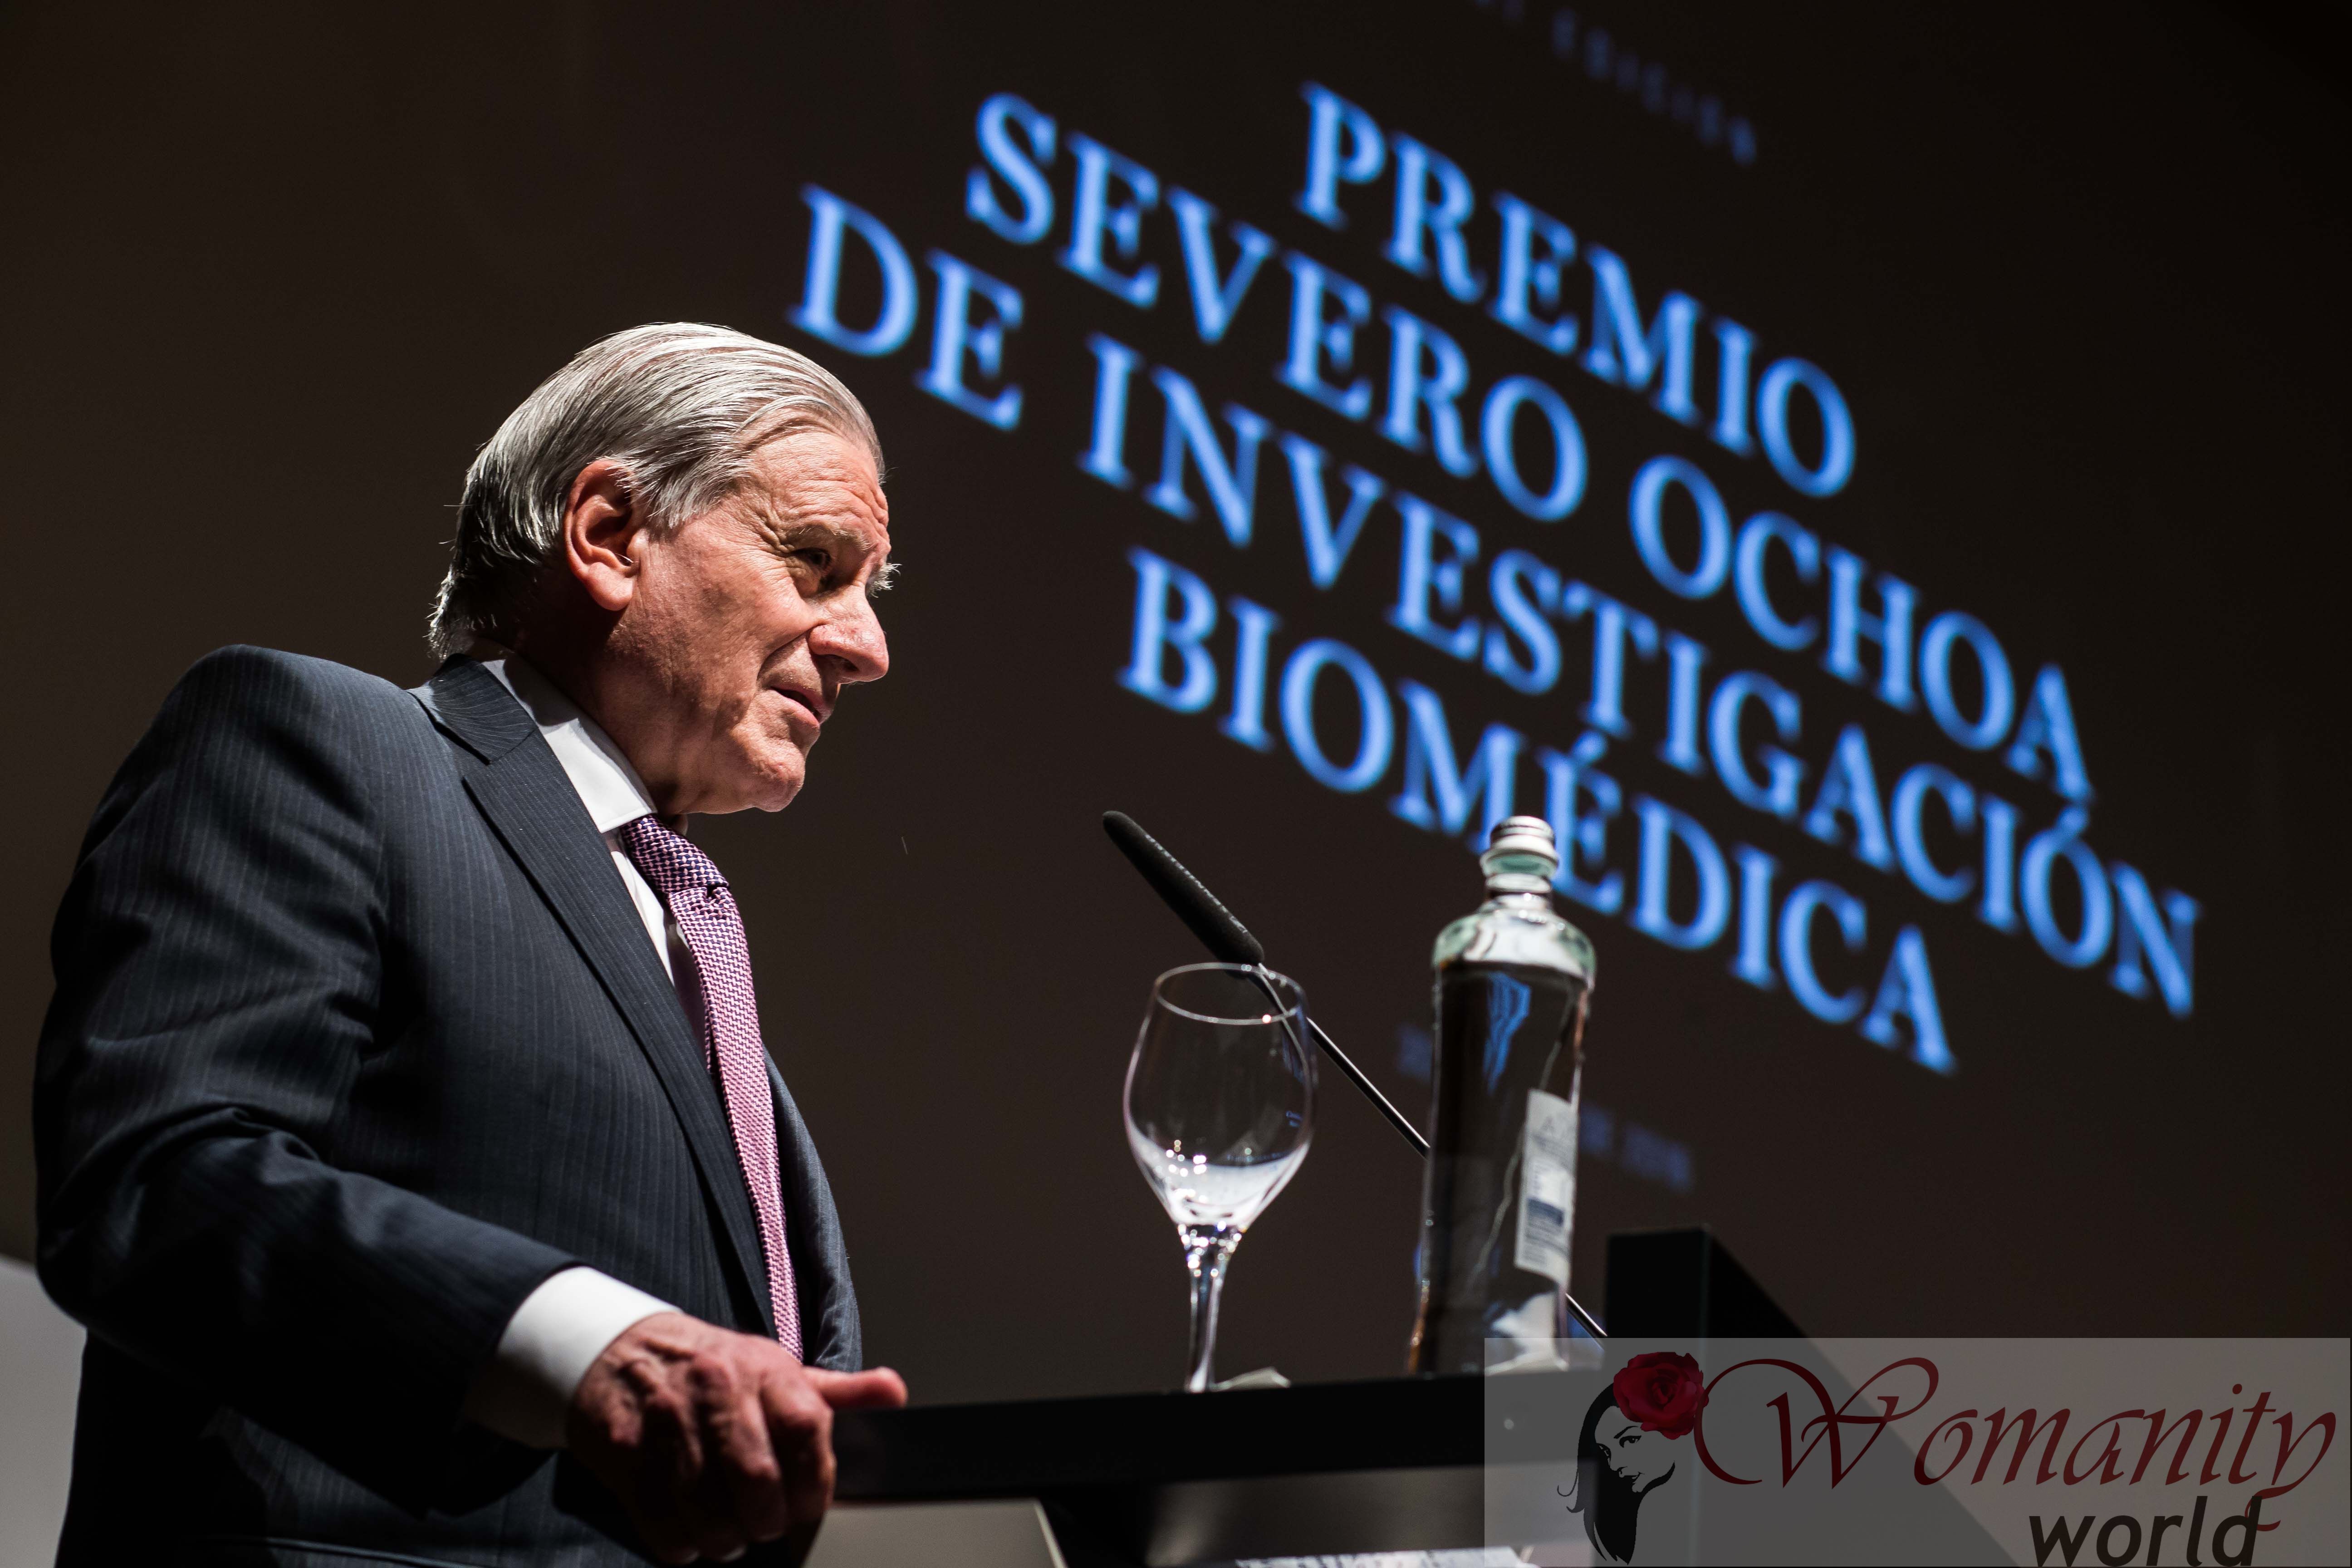 Dr. Valentín Fuster, Severo Ochoa Award for Biomedical Ricerca.